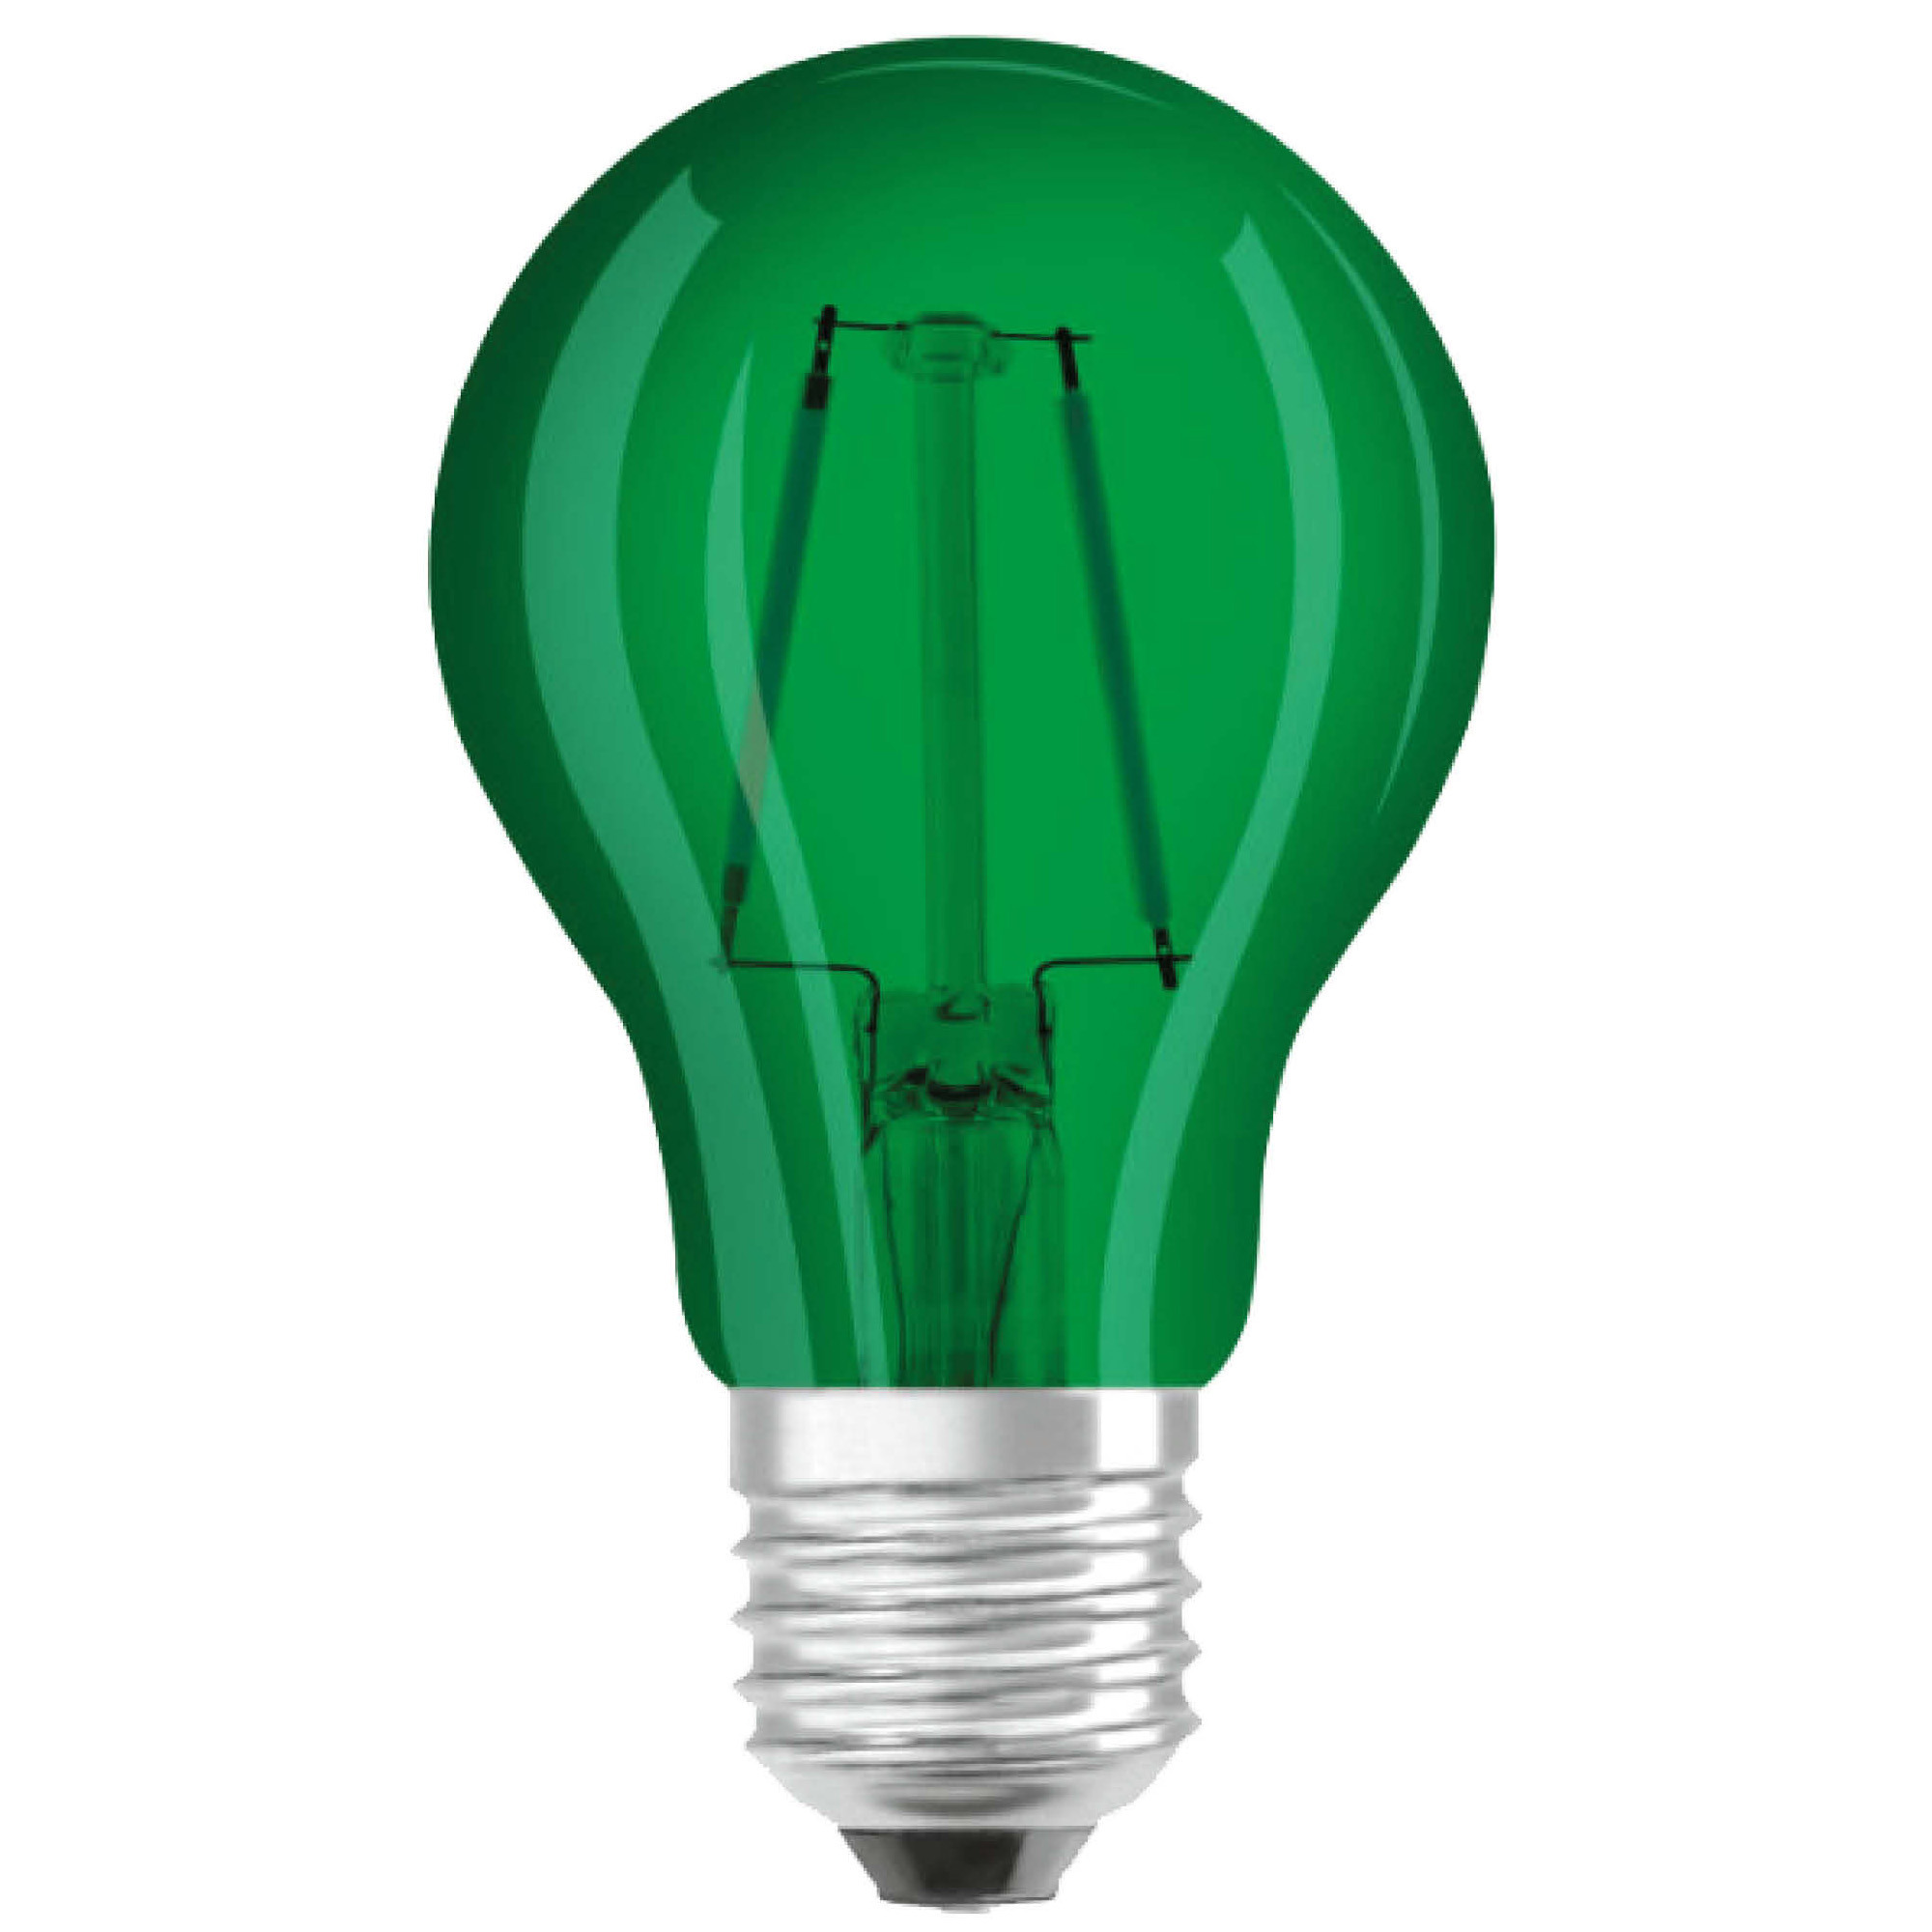 Halloween feestverlichting lamp gekleurd groen 5W E27 fitting griezelige decoratie